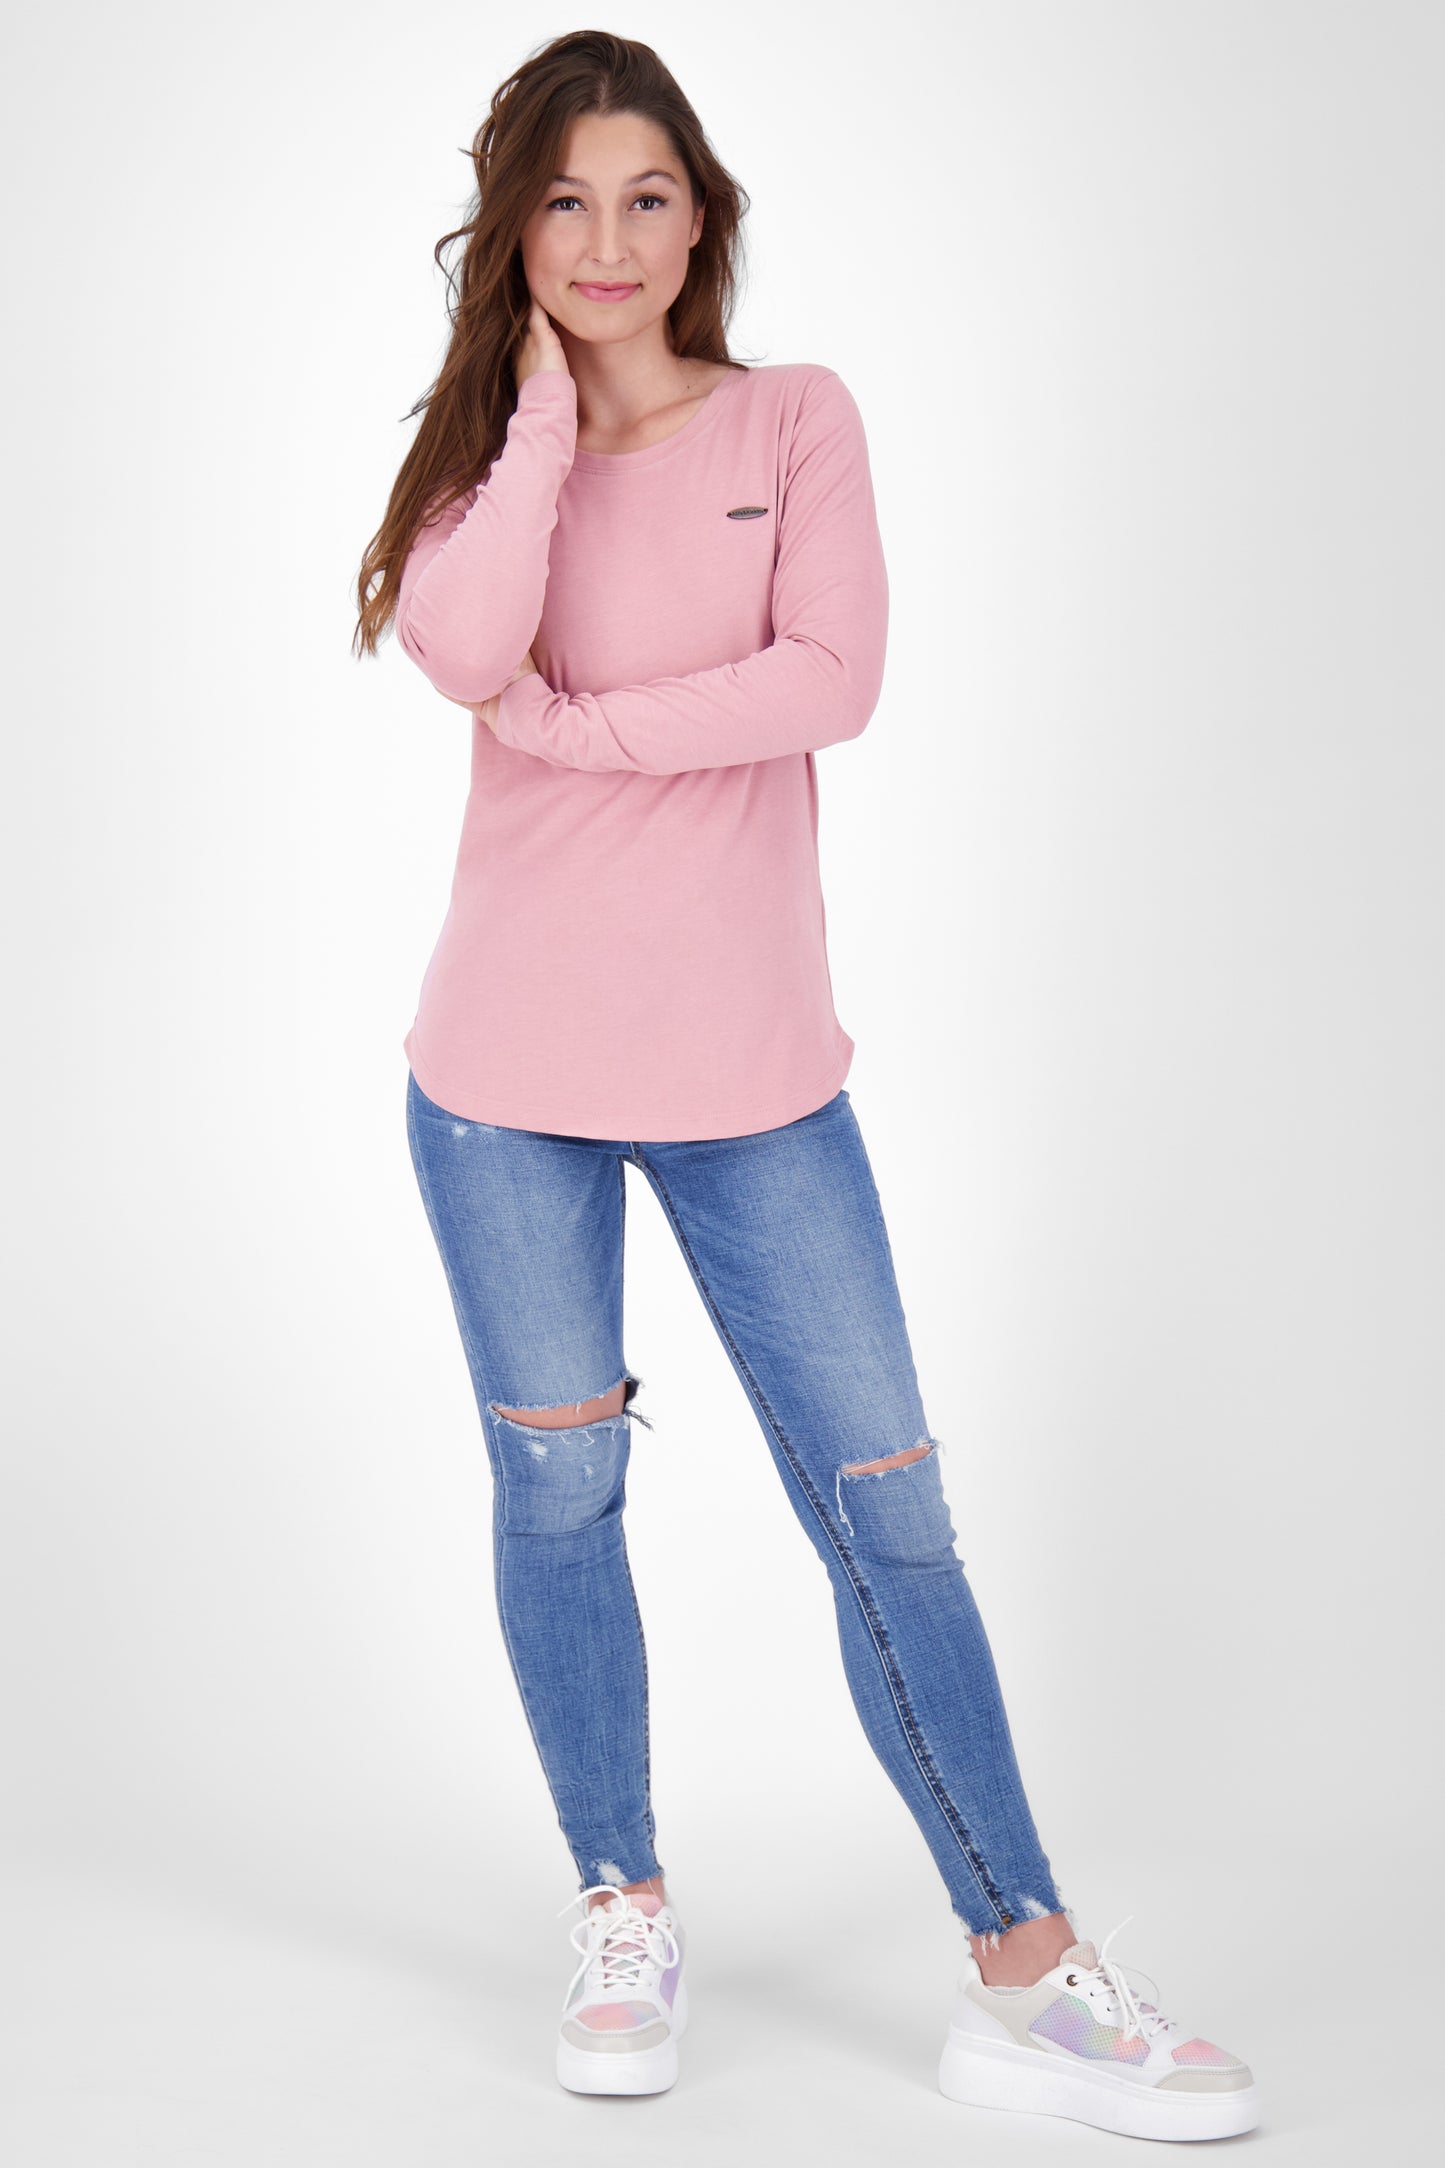 Sportlich und feminin - Langarmshirt LeaAK A für modische Frauen Rosa